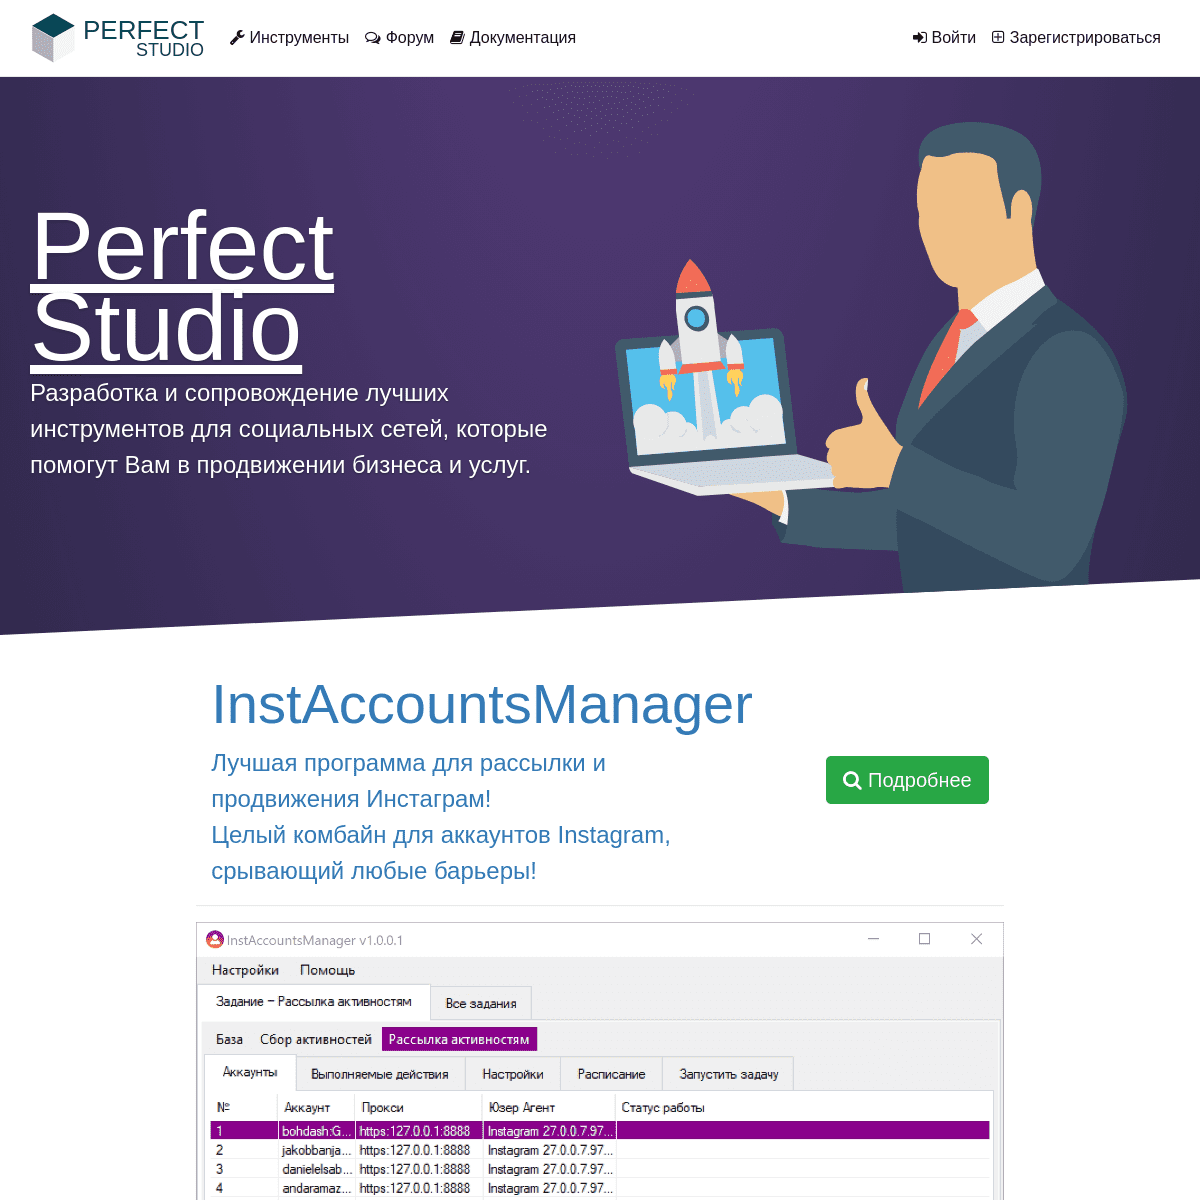 Perfect-Studio.net — лучшие программные инструменты для продвижении Вашего бизнеса и услуг в социальных сетях: ВКонтакте, ОДнокл